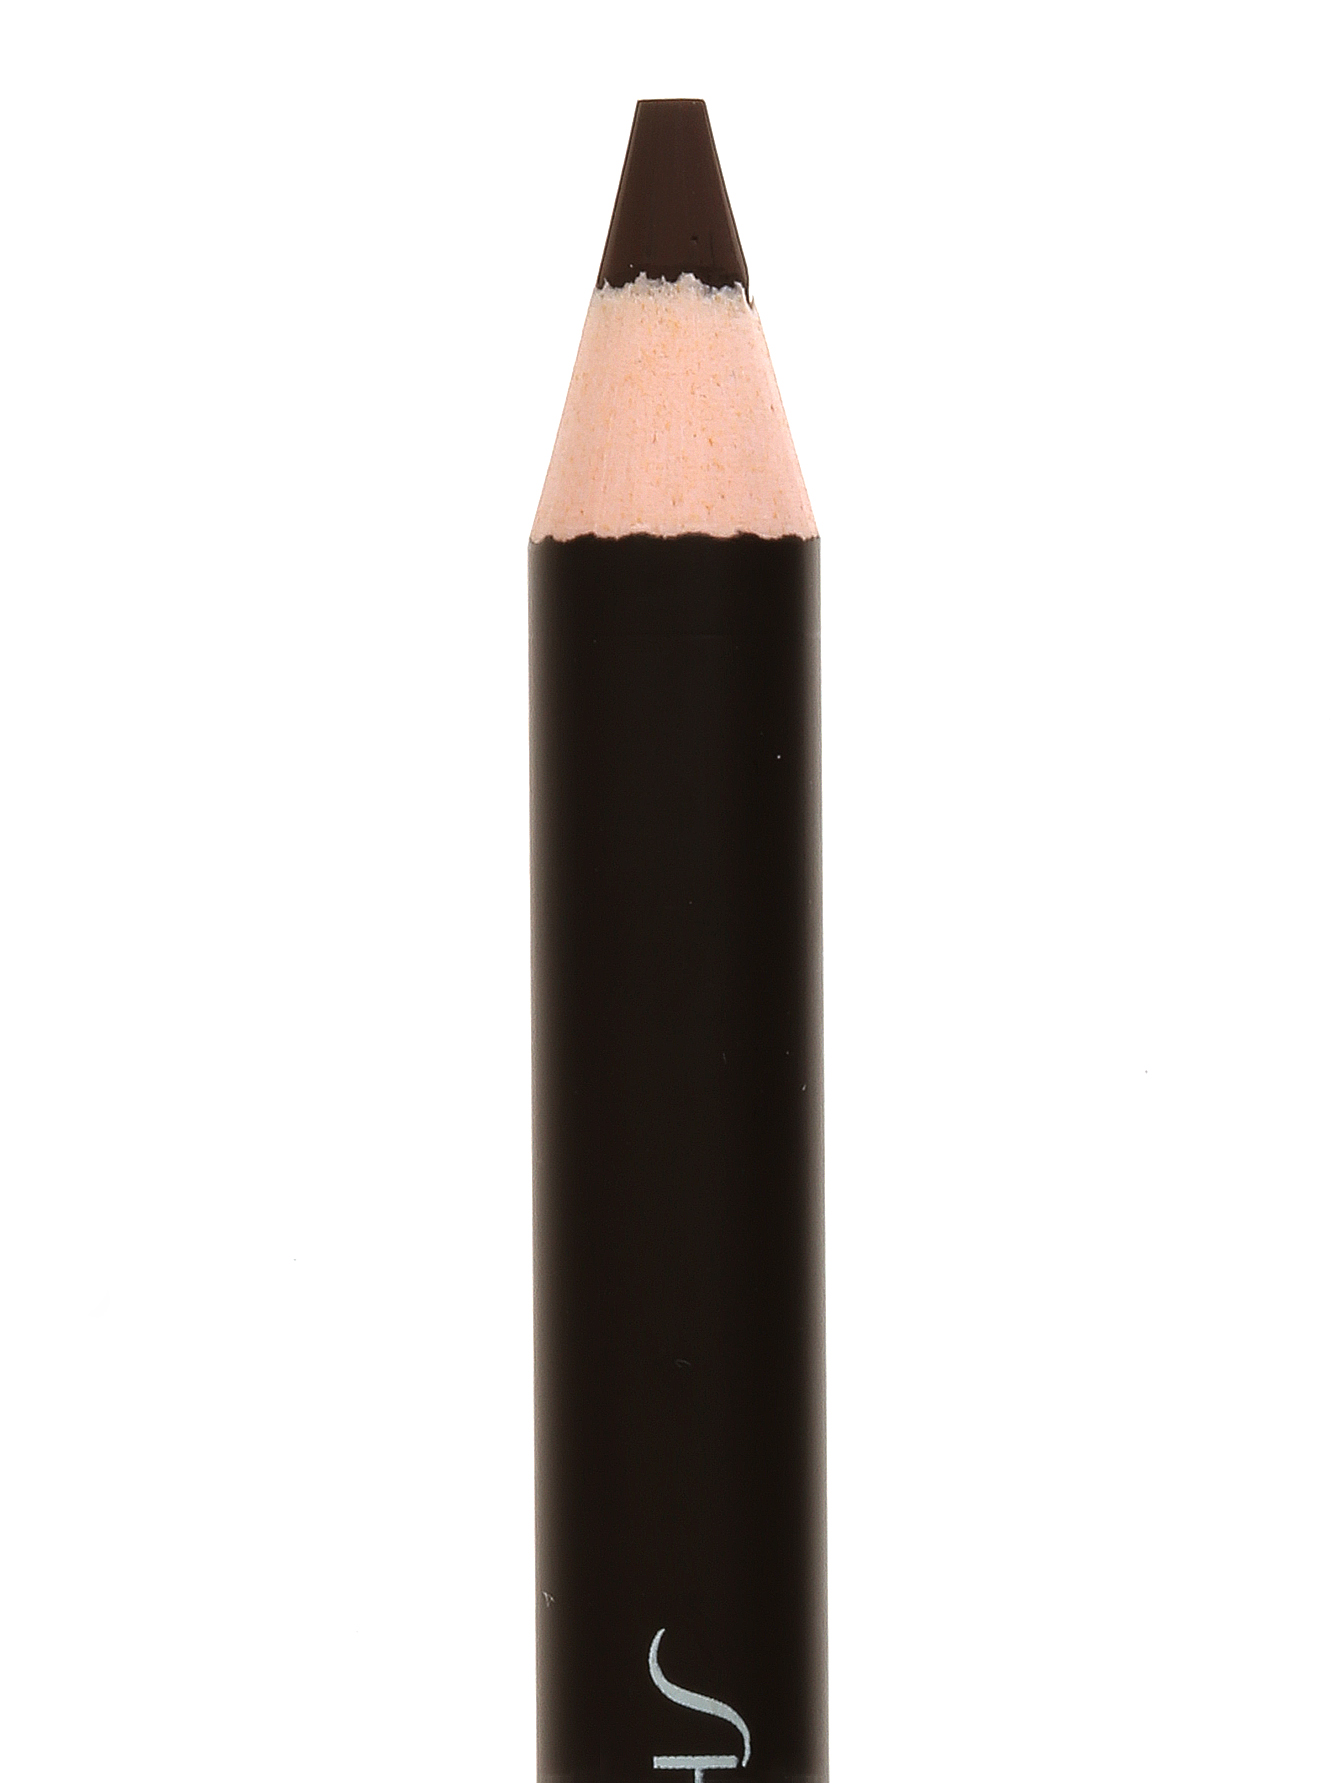 Карандаш для век - BR602, Eyebrow Pencil - Общий вид